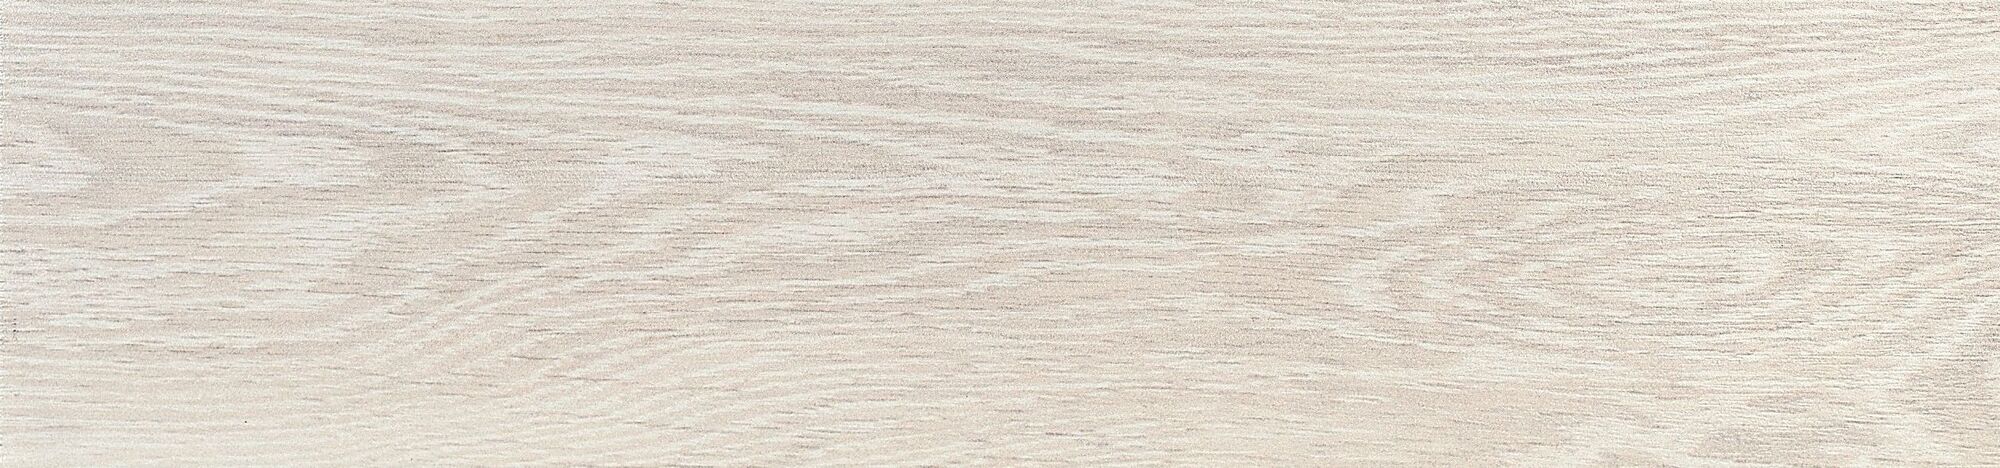 Керамическая плитка Керамин Oset Nordic White Напольная плитка 15х60